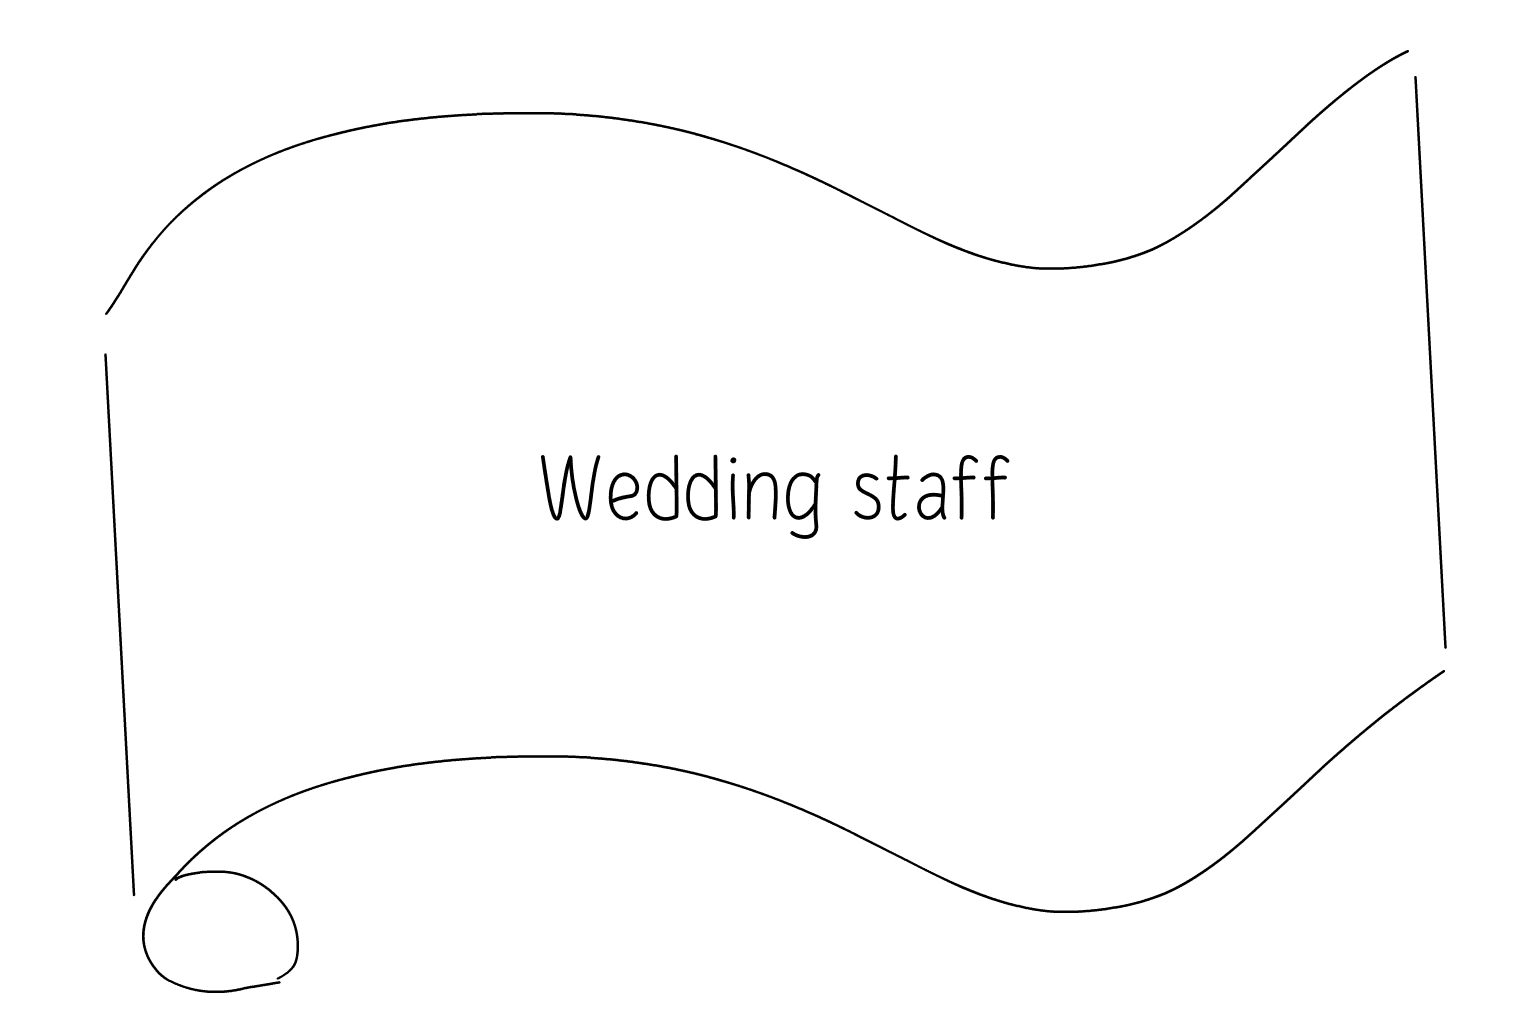 Иллюстрация Персонал свадебной службы